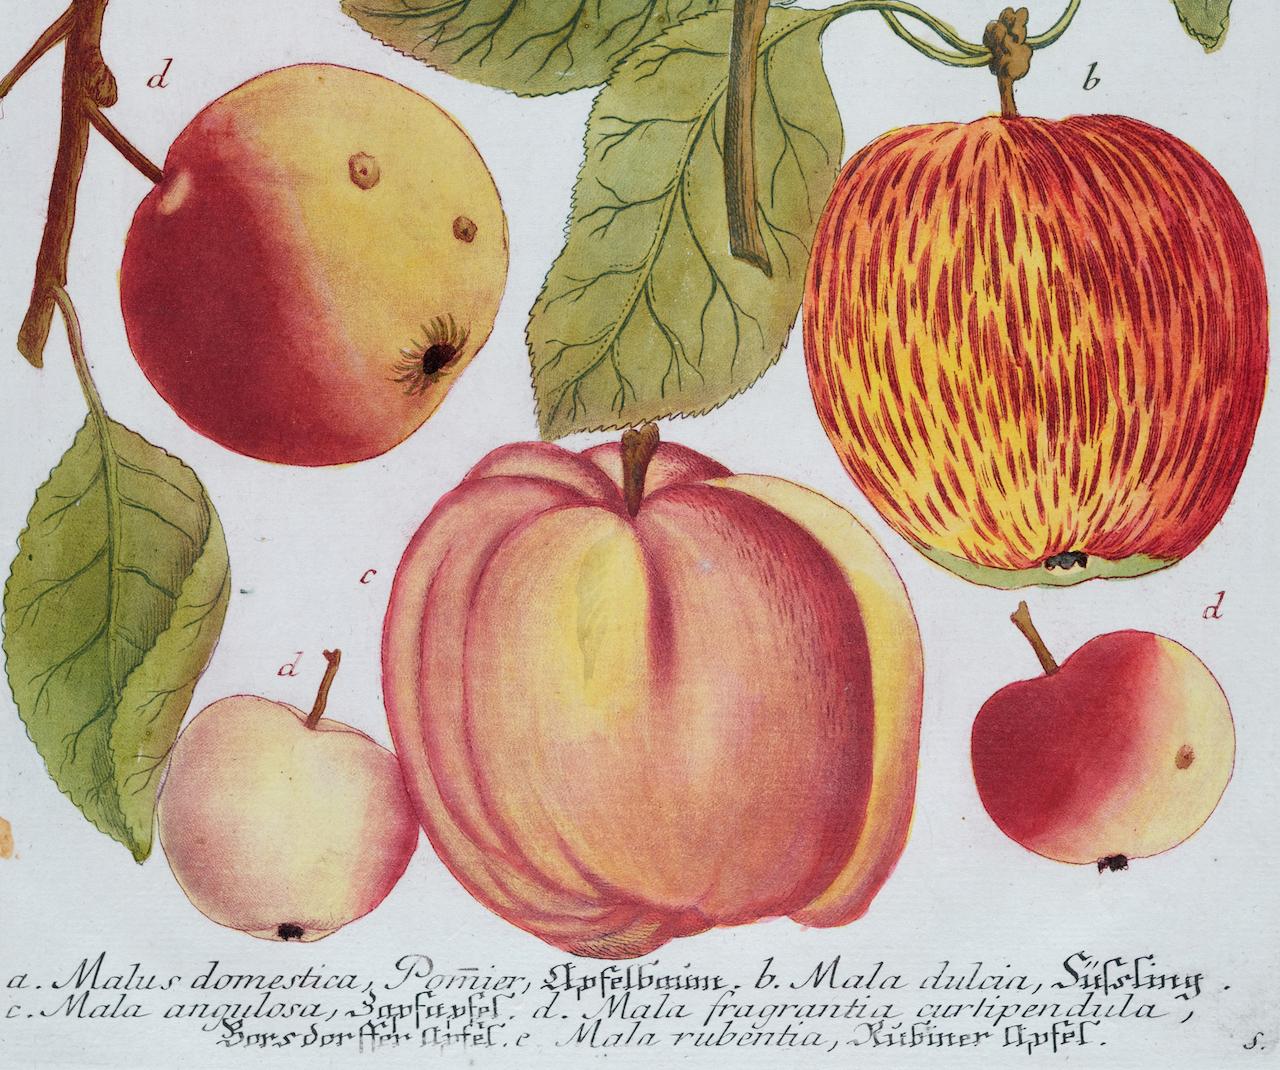 Dieser auffallende handkolorierte botanische Schabkunst- und Strichstich trägt den Titel Malus domestica, Pomier, Apfelbaunt